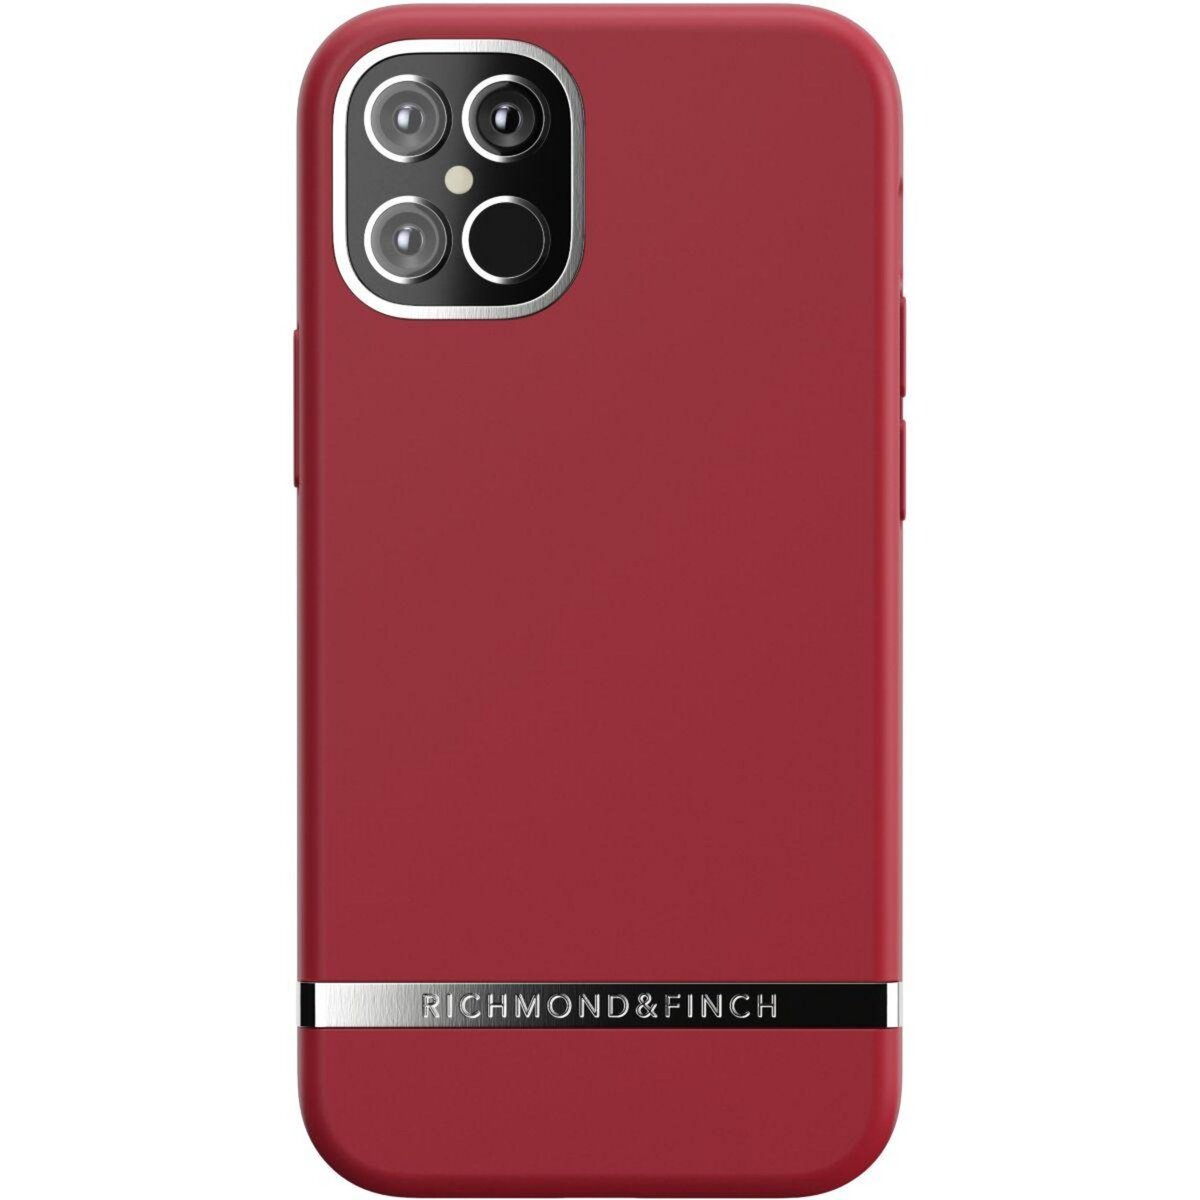 RICHMOND & FINICH Coque iPhone 12 mini rouge